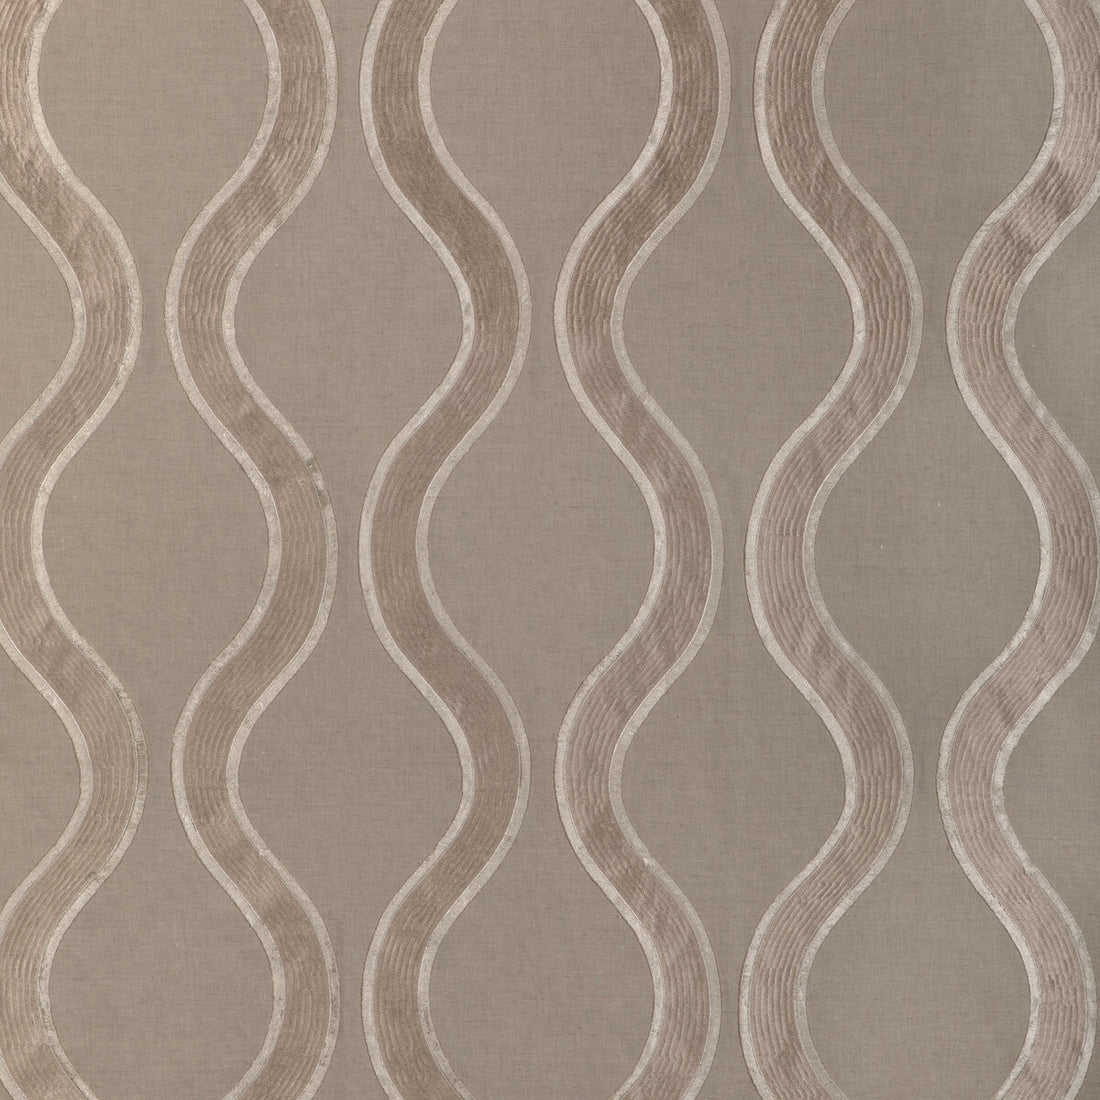 Kravet Design fabric in 90012-106 color - pattern 90012.106.0 - by Kravet Design